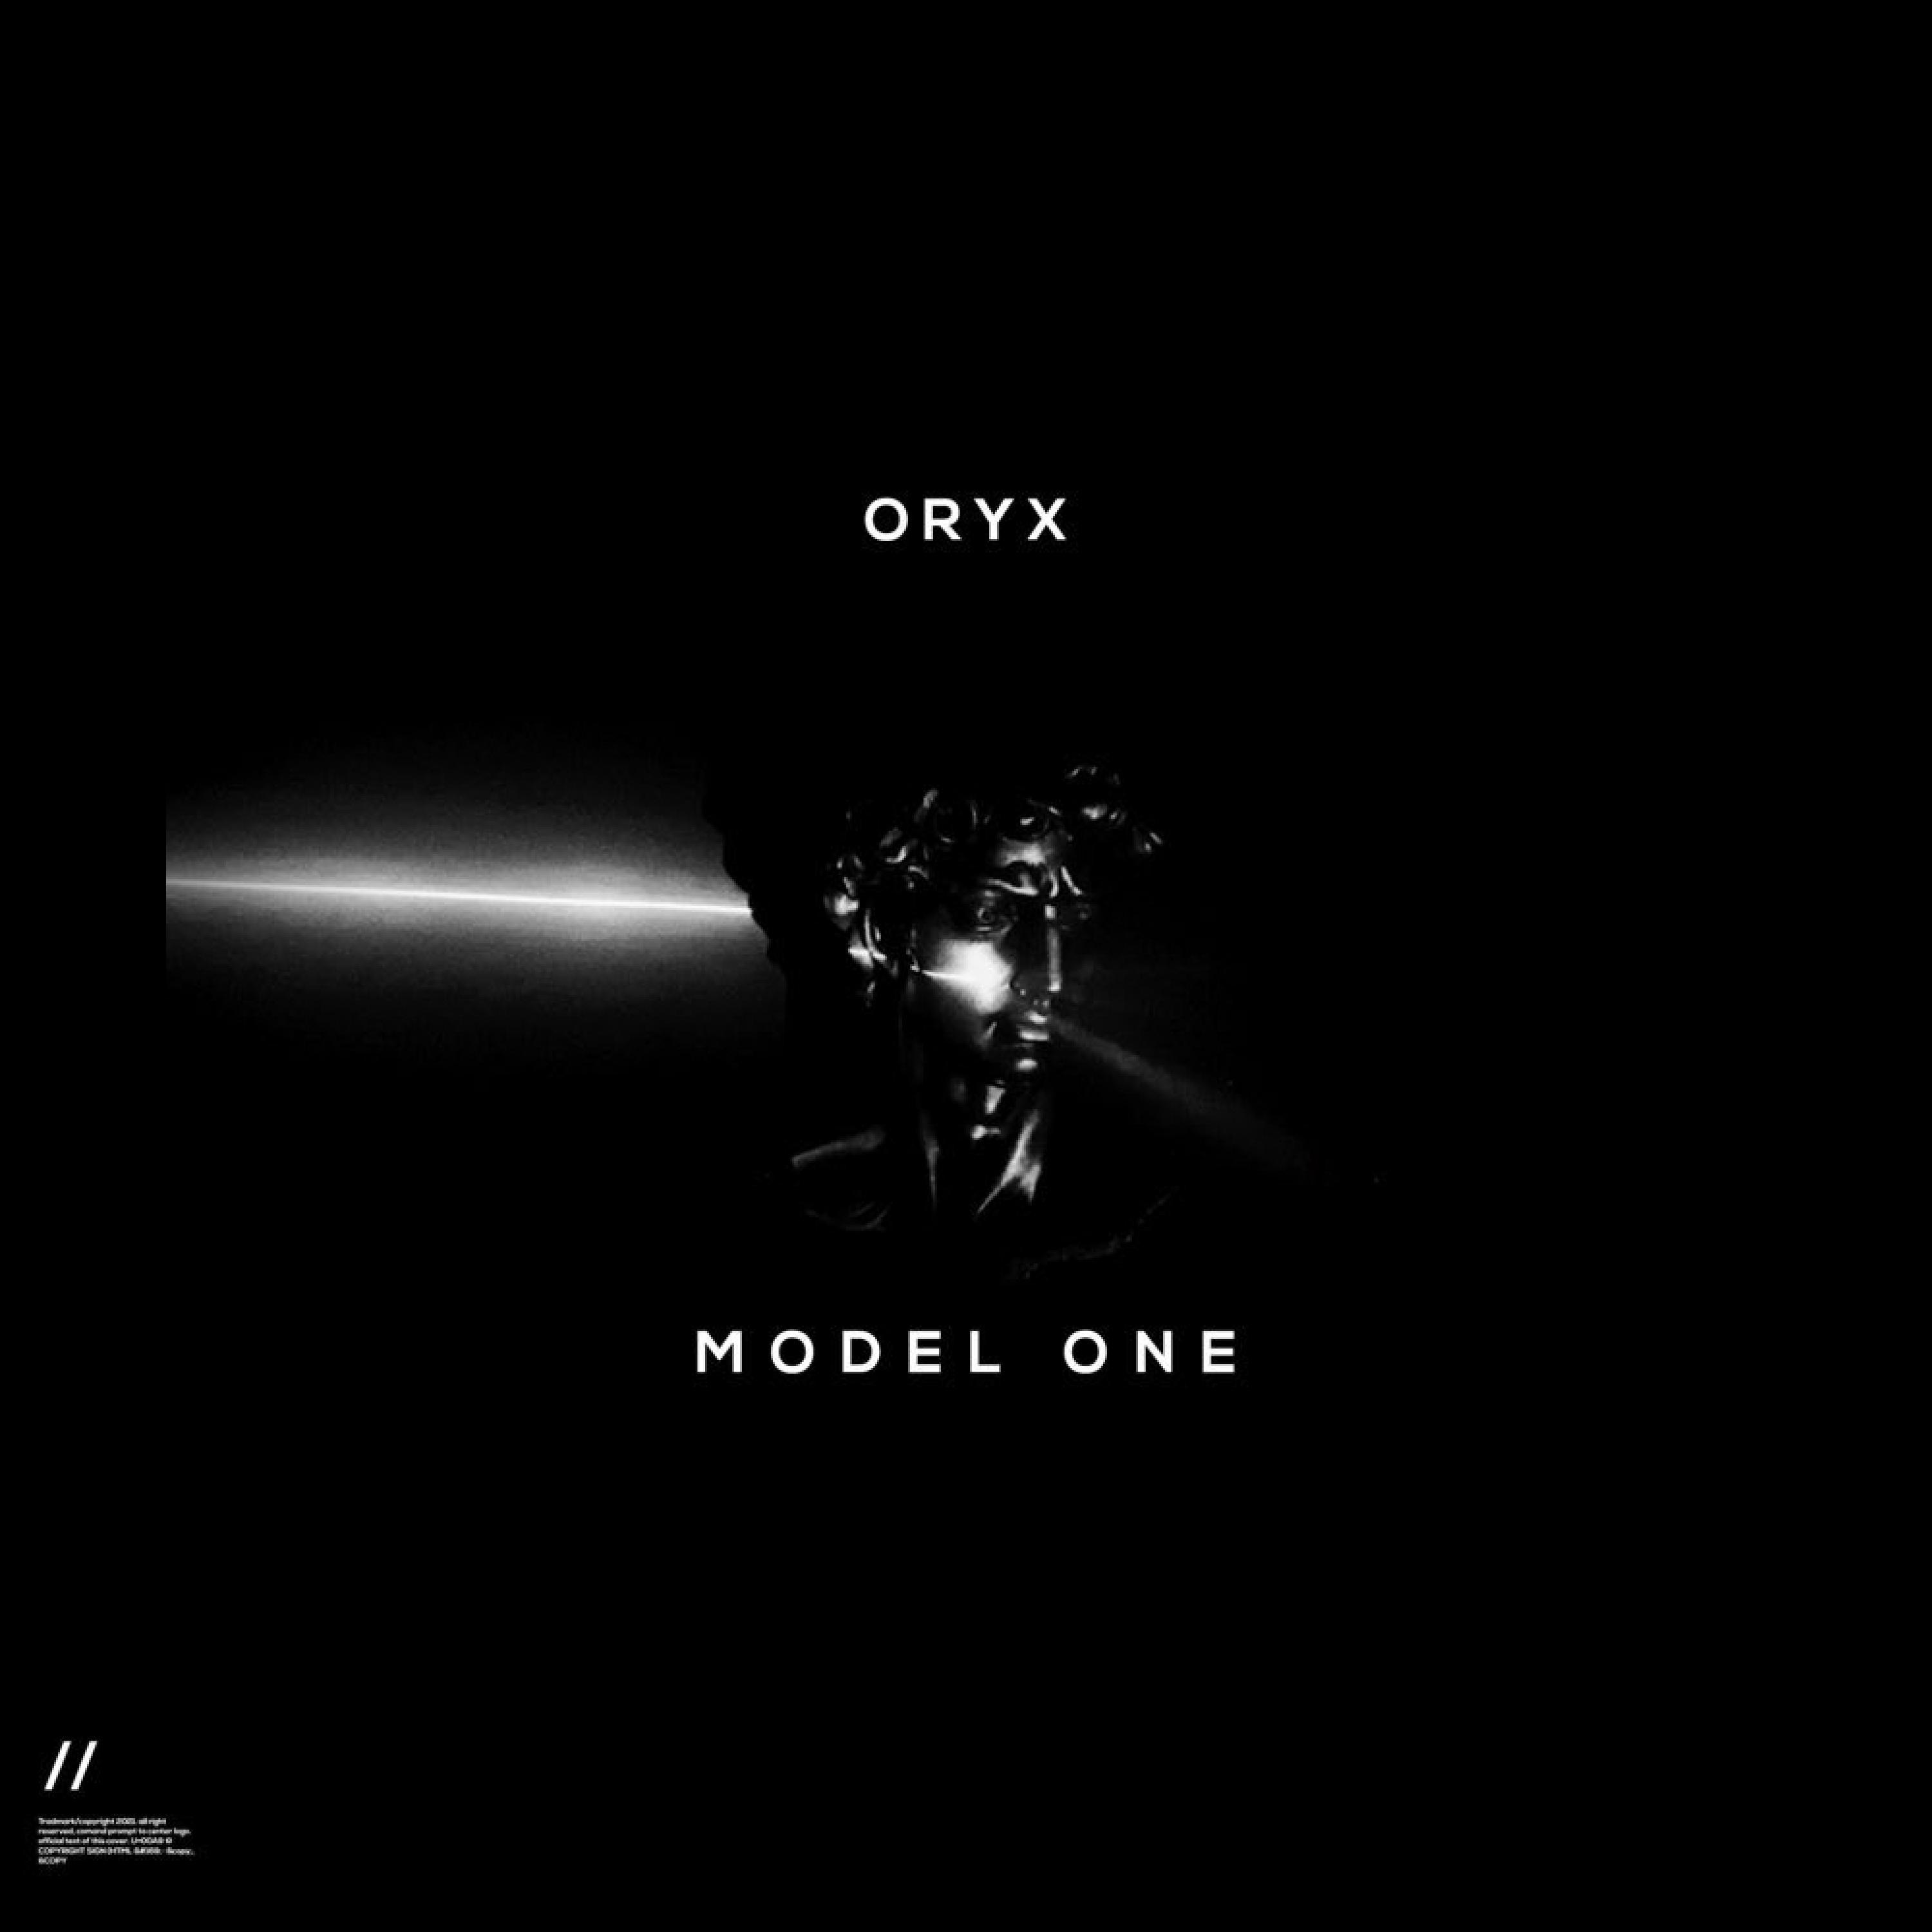 Oryx - Iron Giant